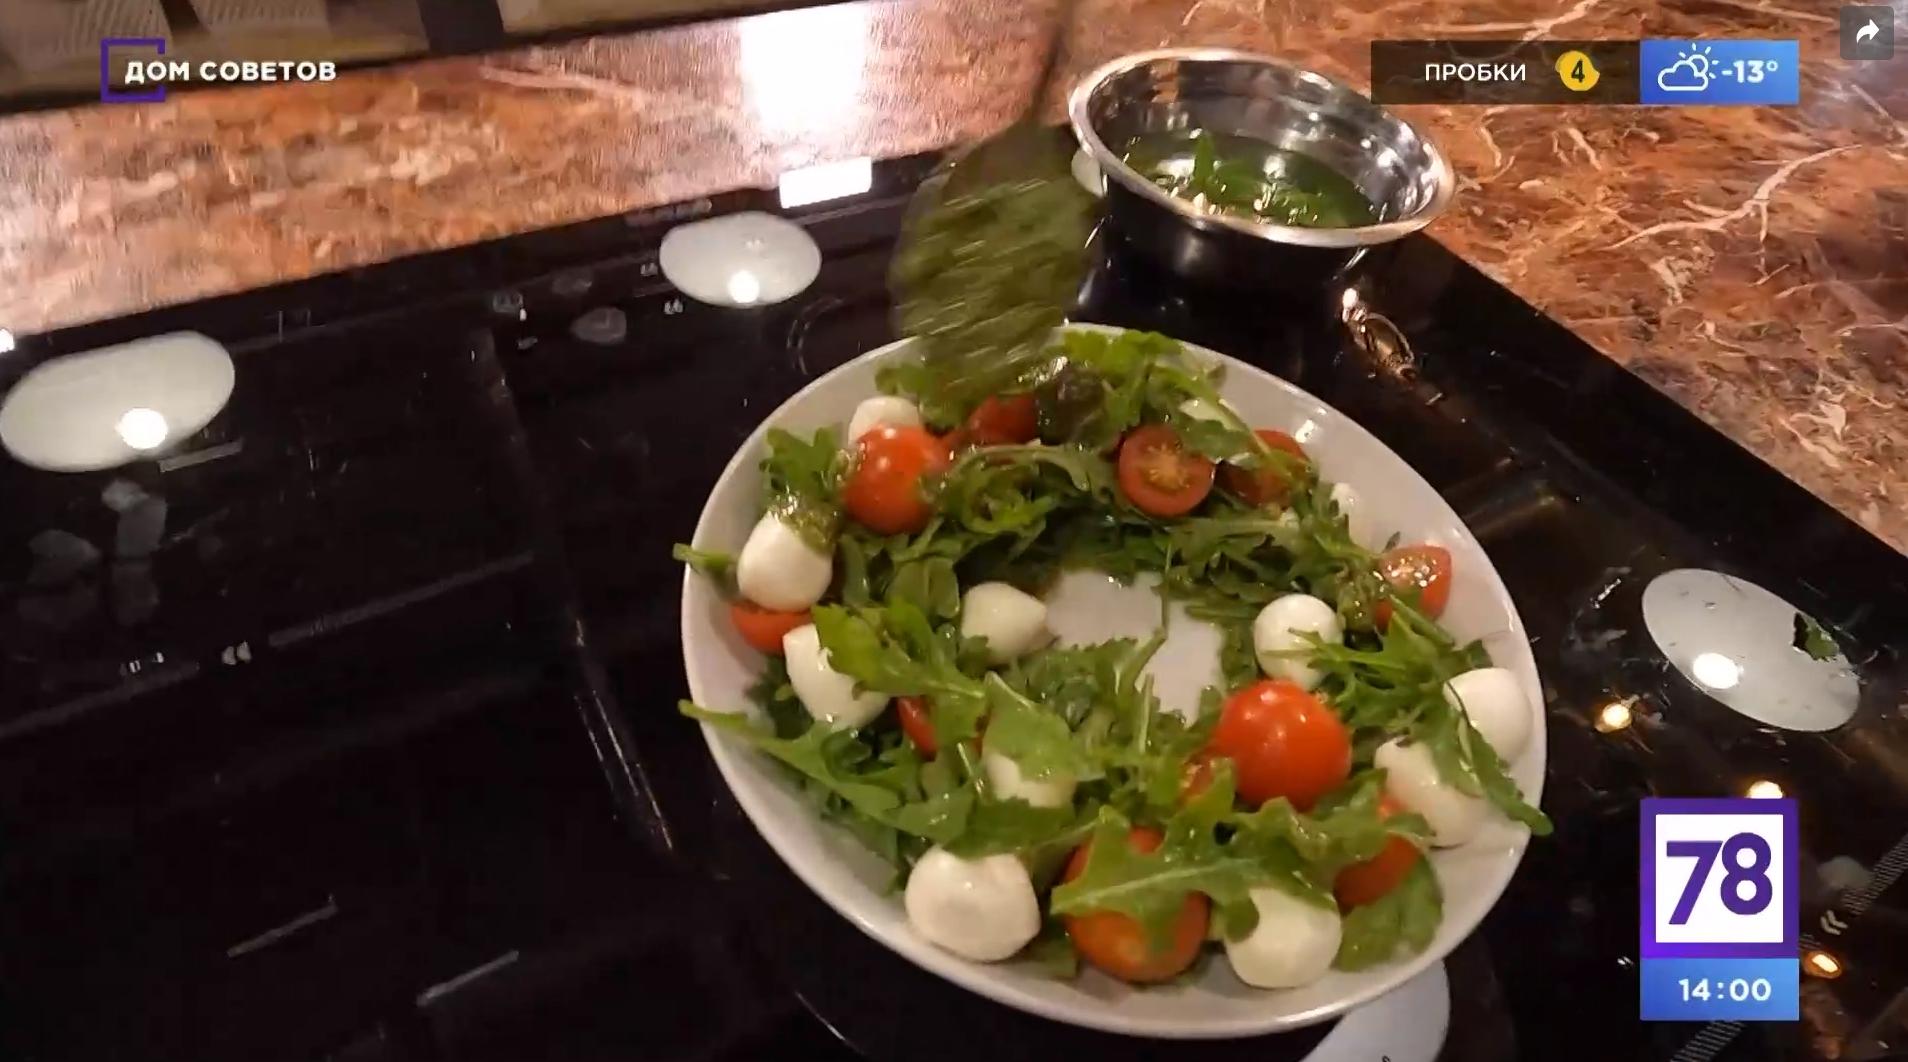 Подборка вкусных, сытных салатов с майонезной заправкой (14 рецептов на любой вкус)